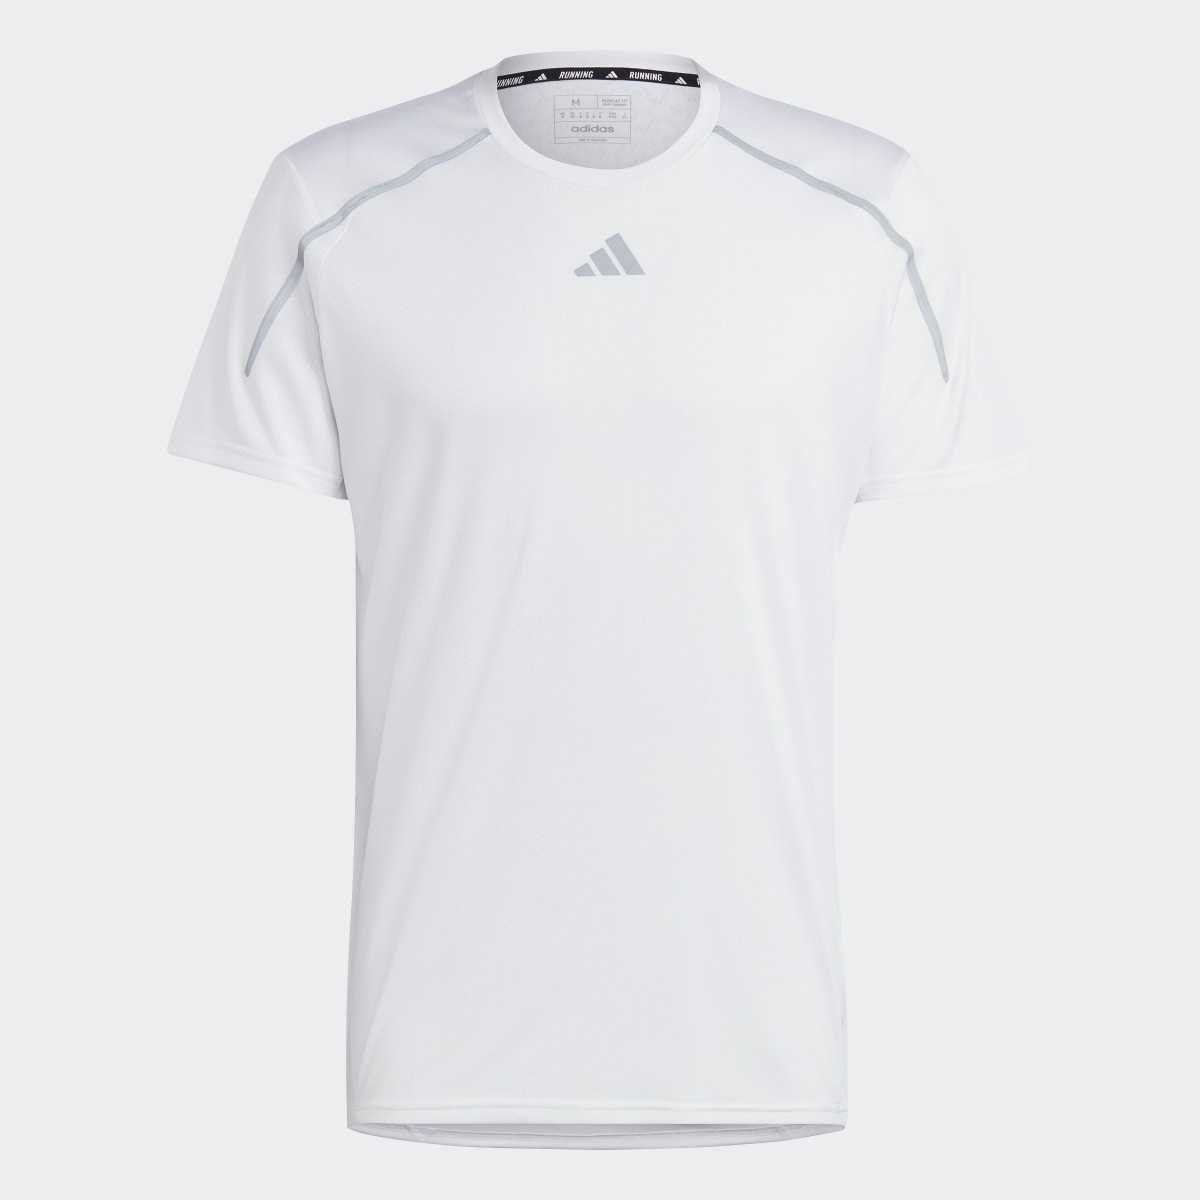 Adidas T-shirt Confident Engineered. 5